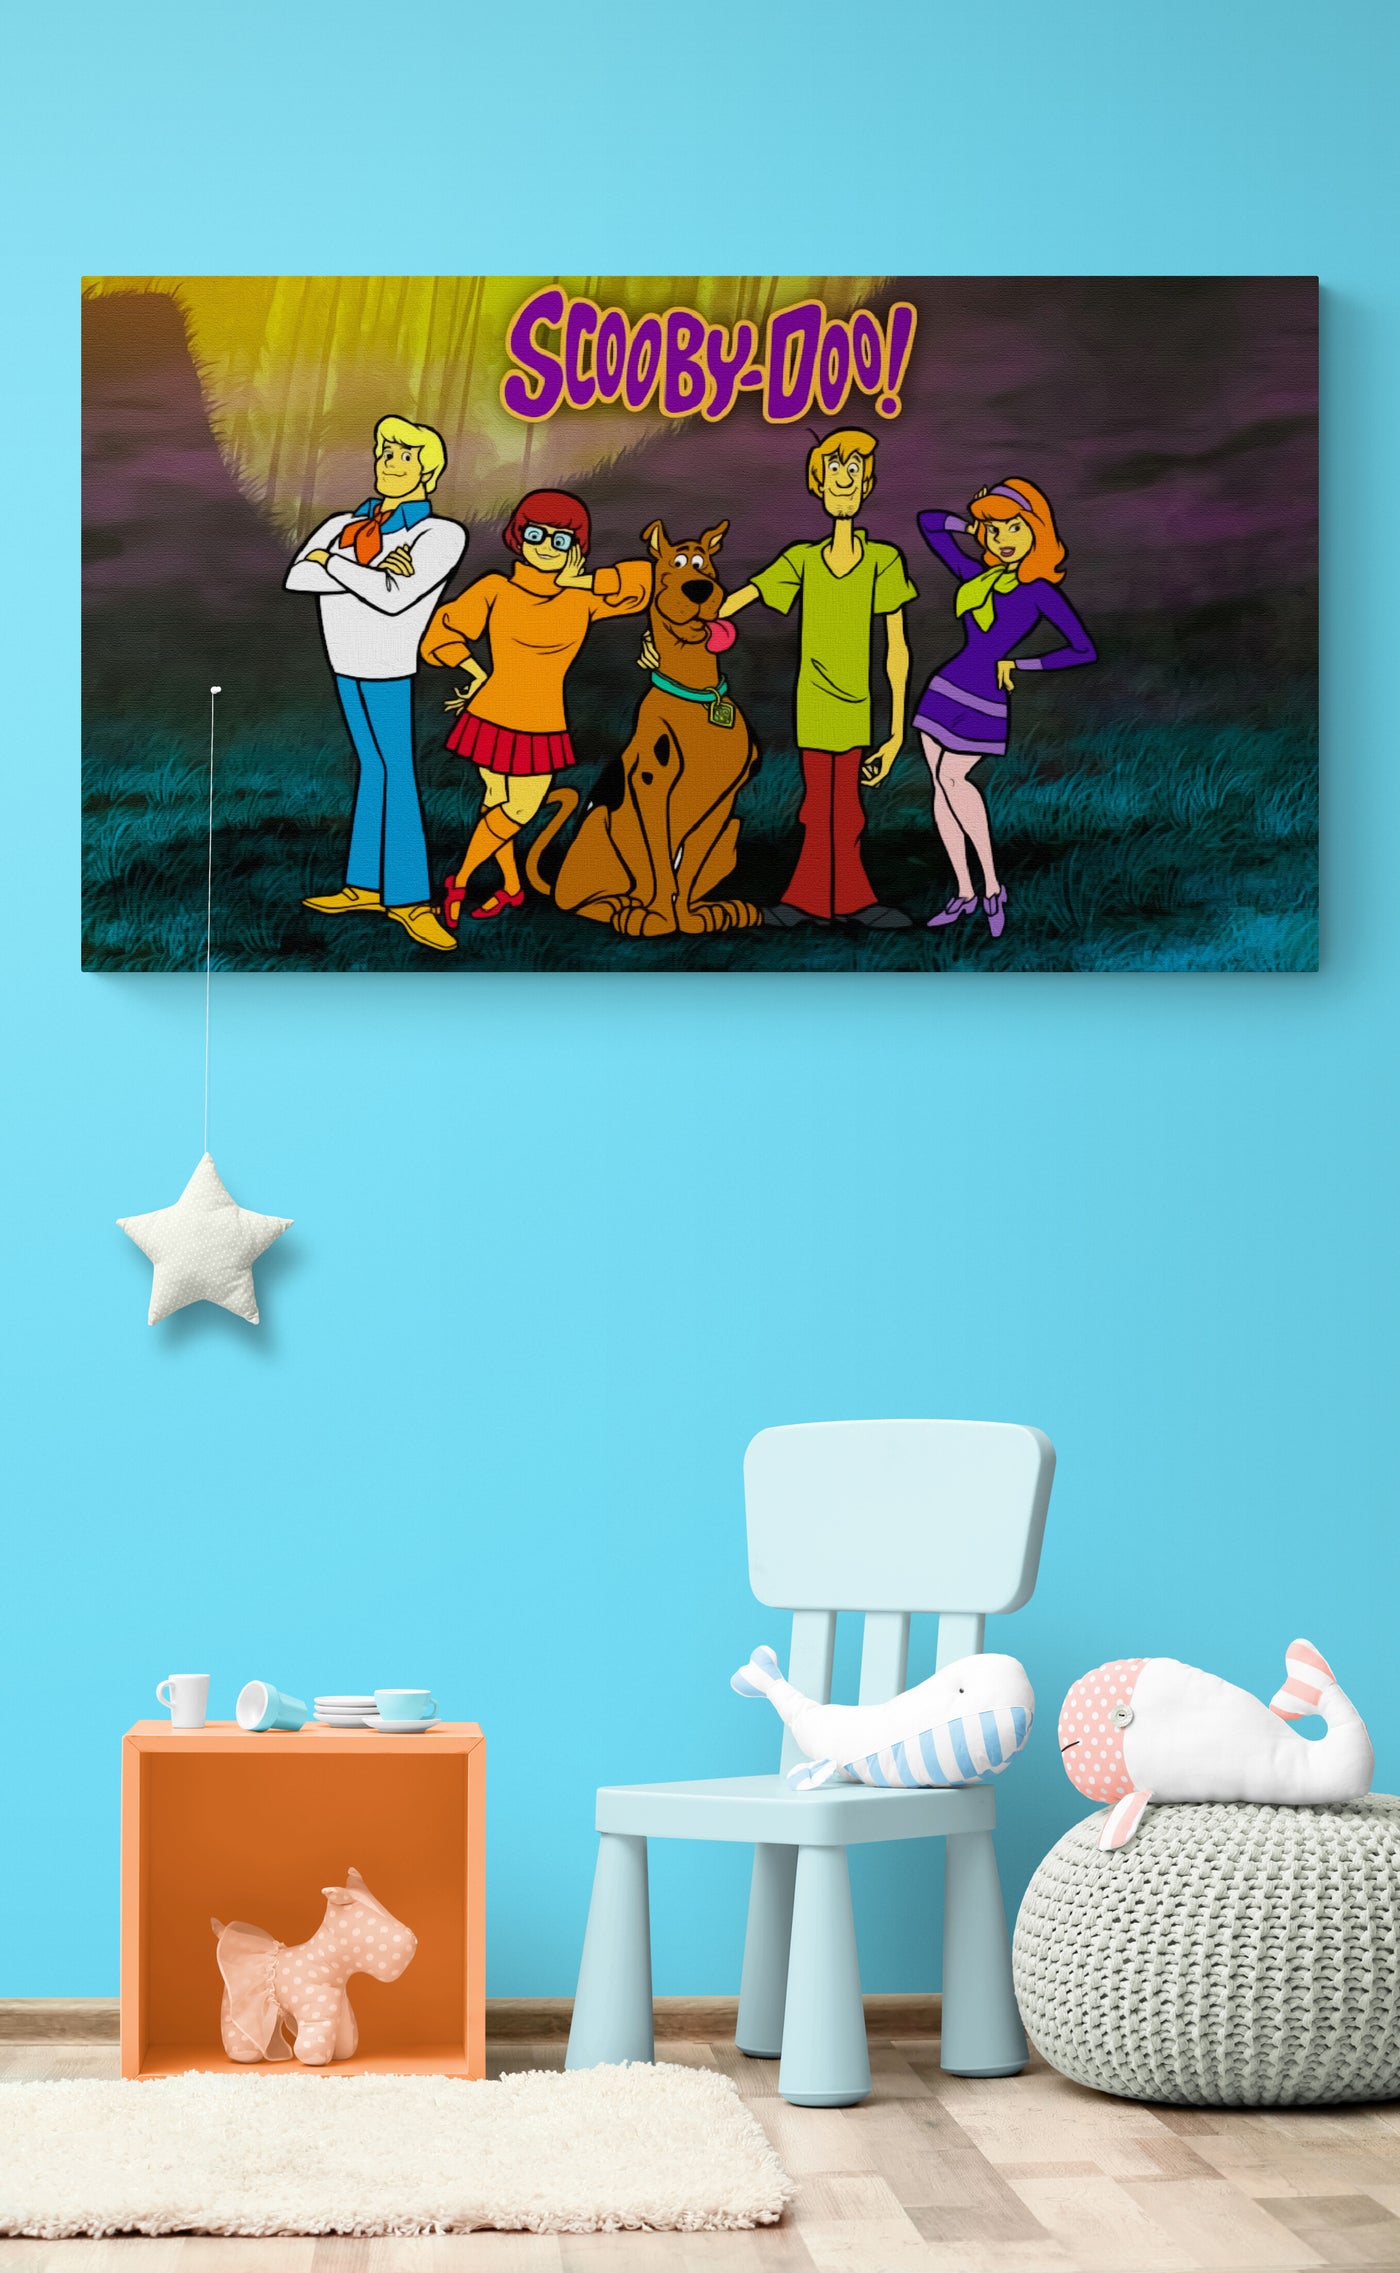 Tablou Scooby Doo cartoon